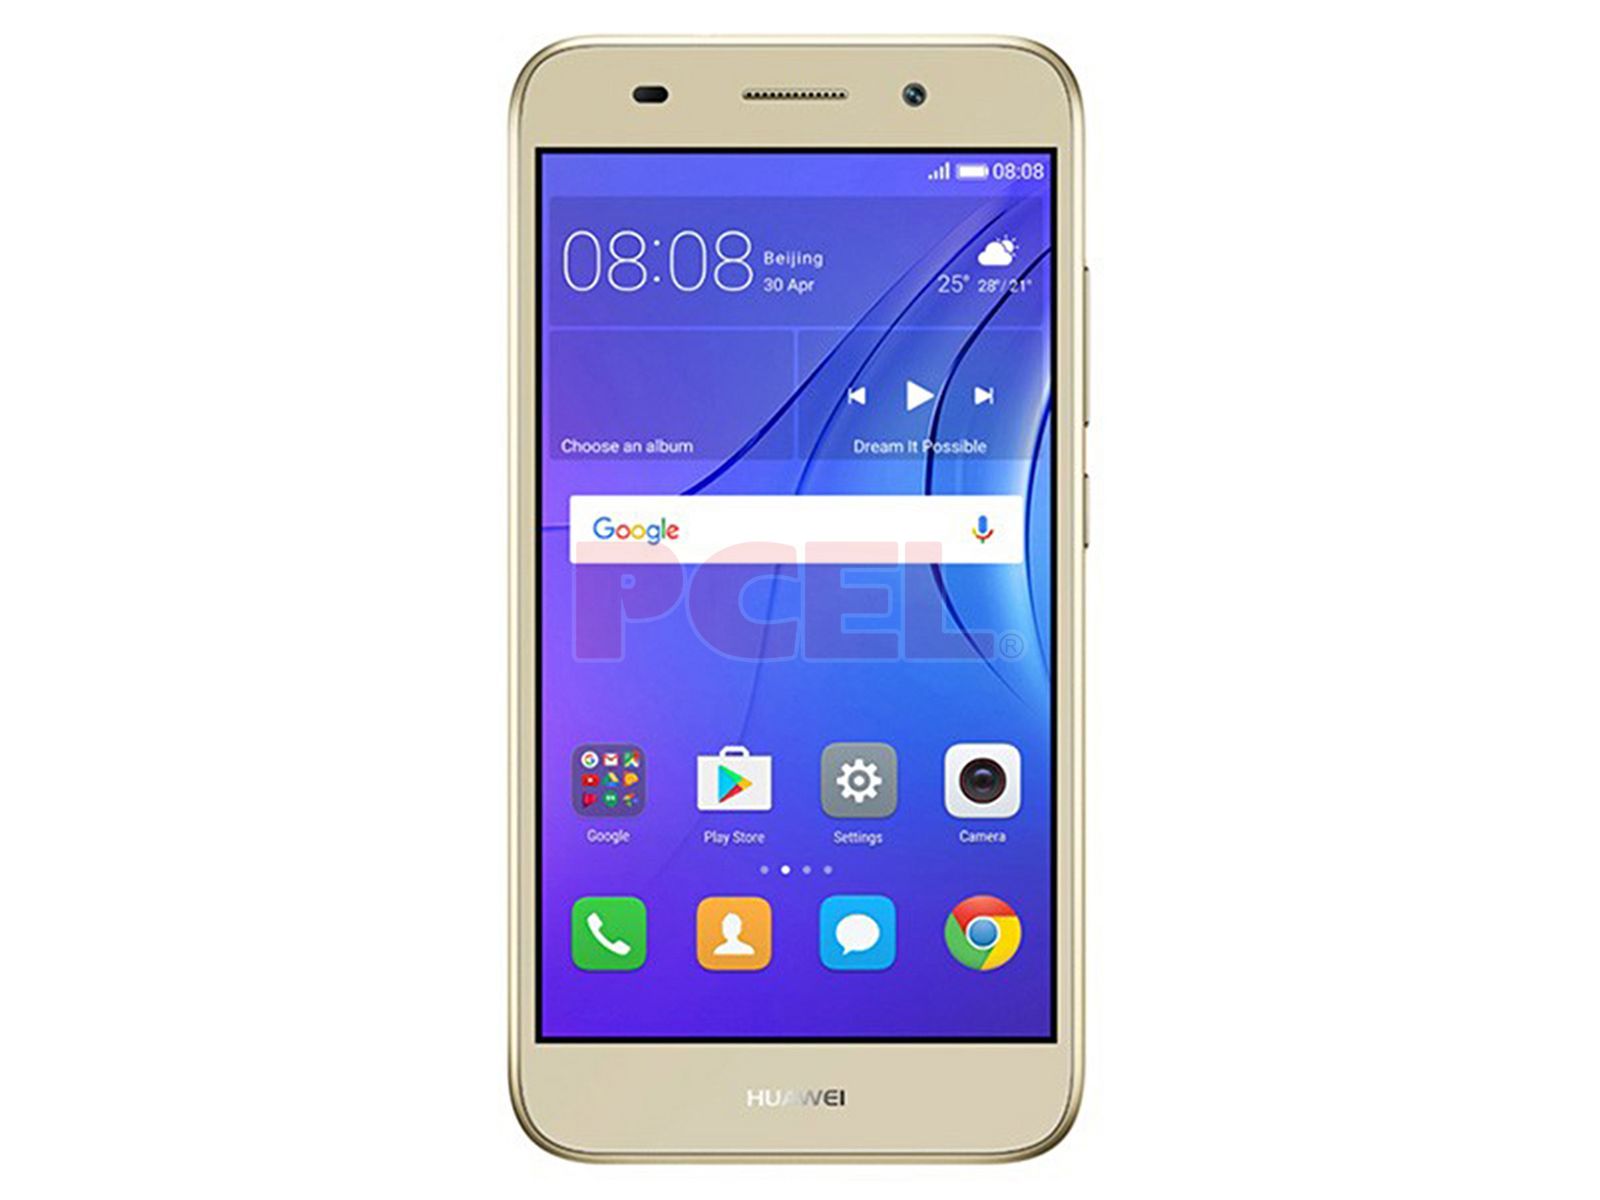 diccionario Detallado arma Smartphone Huawei Y5 Lite 2017: Procesador: Quad Core (hasta 1.4 GHz),  Memoria RAM de 1GB, Almacenamiento de 8GB (expandible con microSD),  Pantalla 5" (854 x 480), Bluetooth, Wi-Fi, 4G LTE, Android 6.0, Color Dorado .